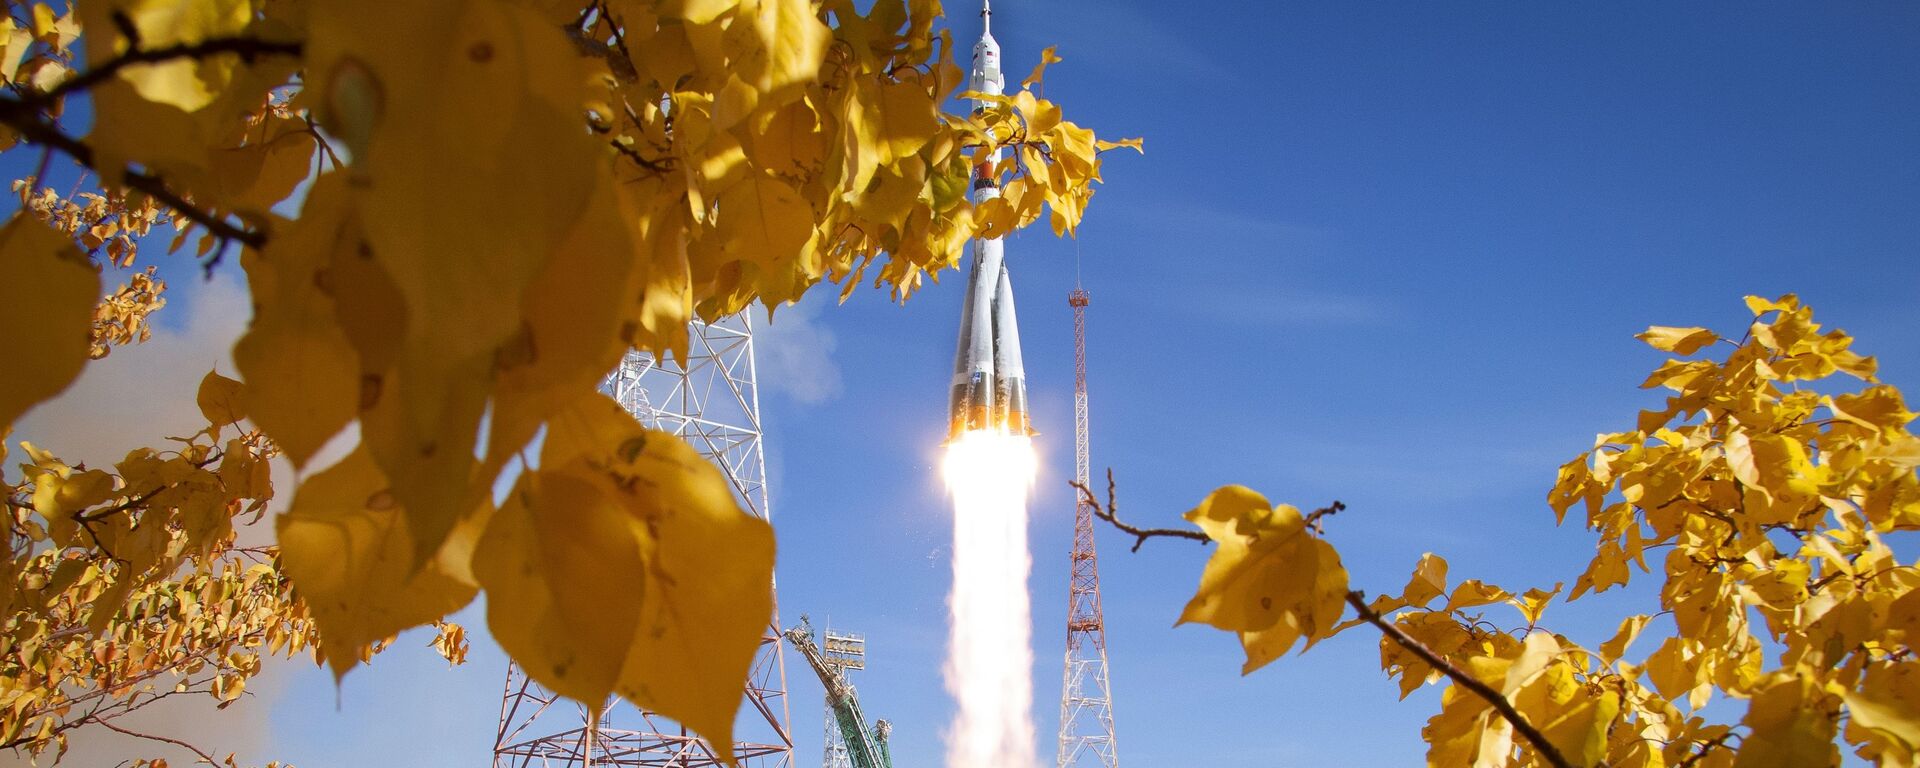 El lanzamiento del Soyuz 2.1a con el Soyuz MS-17 desde el Cosmódromo de Baikonur, el 14 de octubre de 2020 - Sputnik Mundo, 1920, 17.04.2021